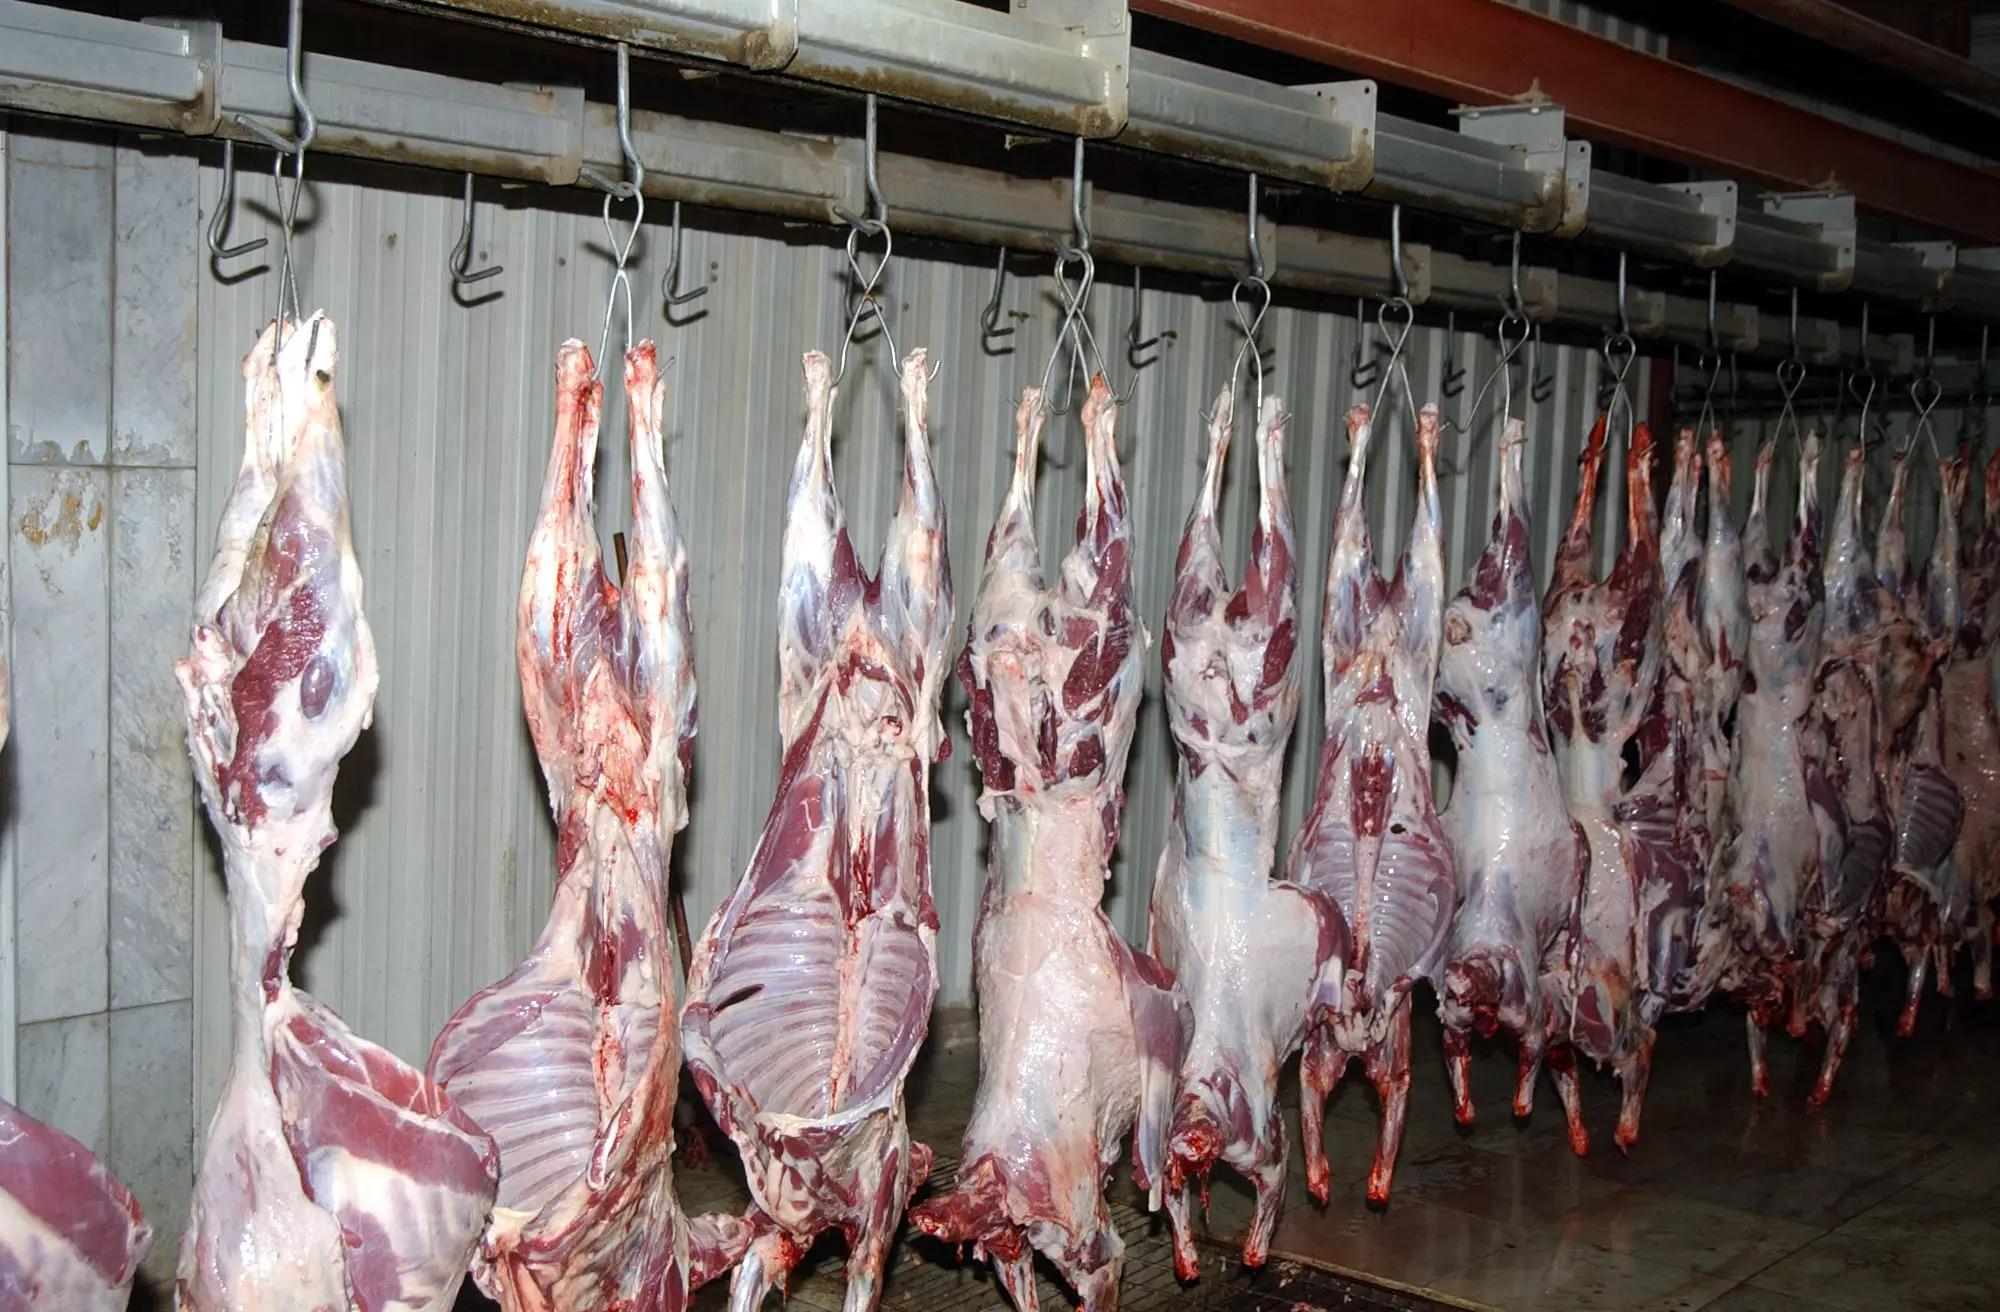 اقترح استيراد اللحوم المجمدة … رئيس جمعية اللحامين : الأغنام المستوردة أسعارها أقل من المنتجة محلياً 